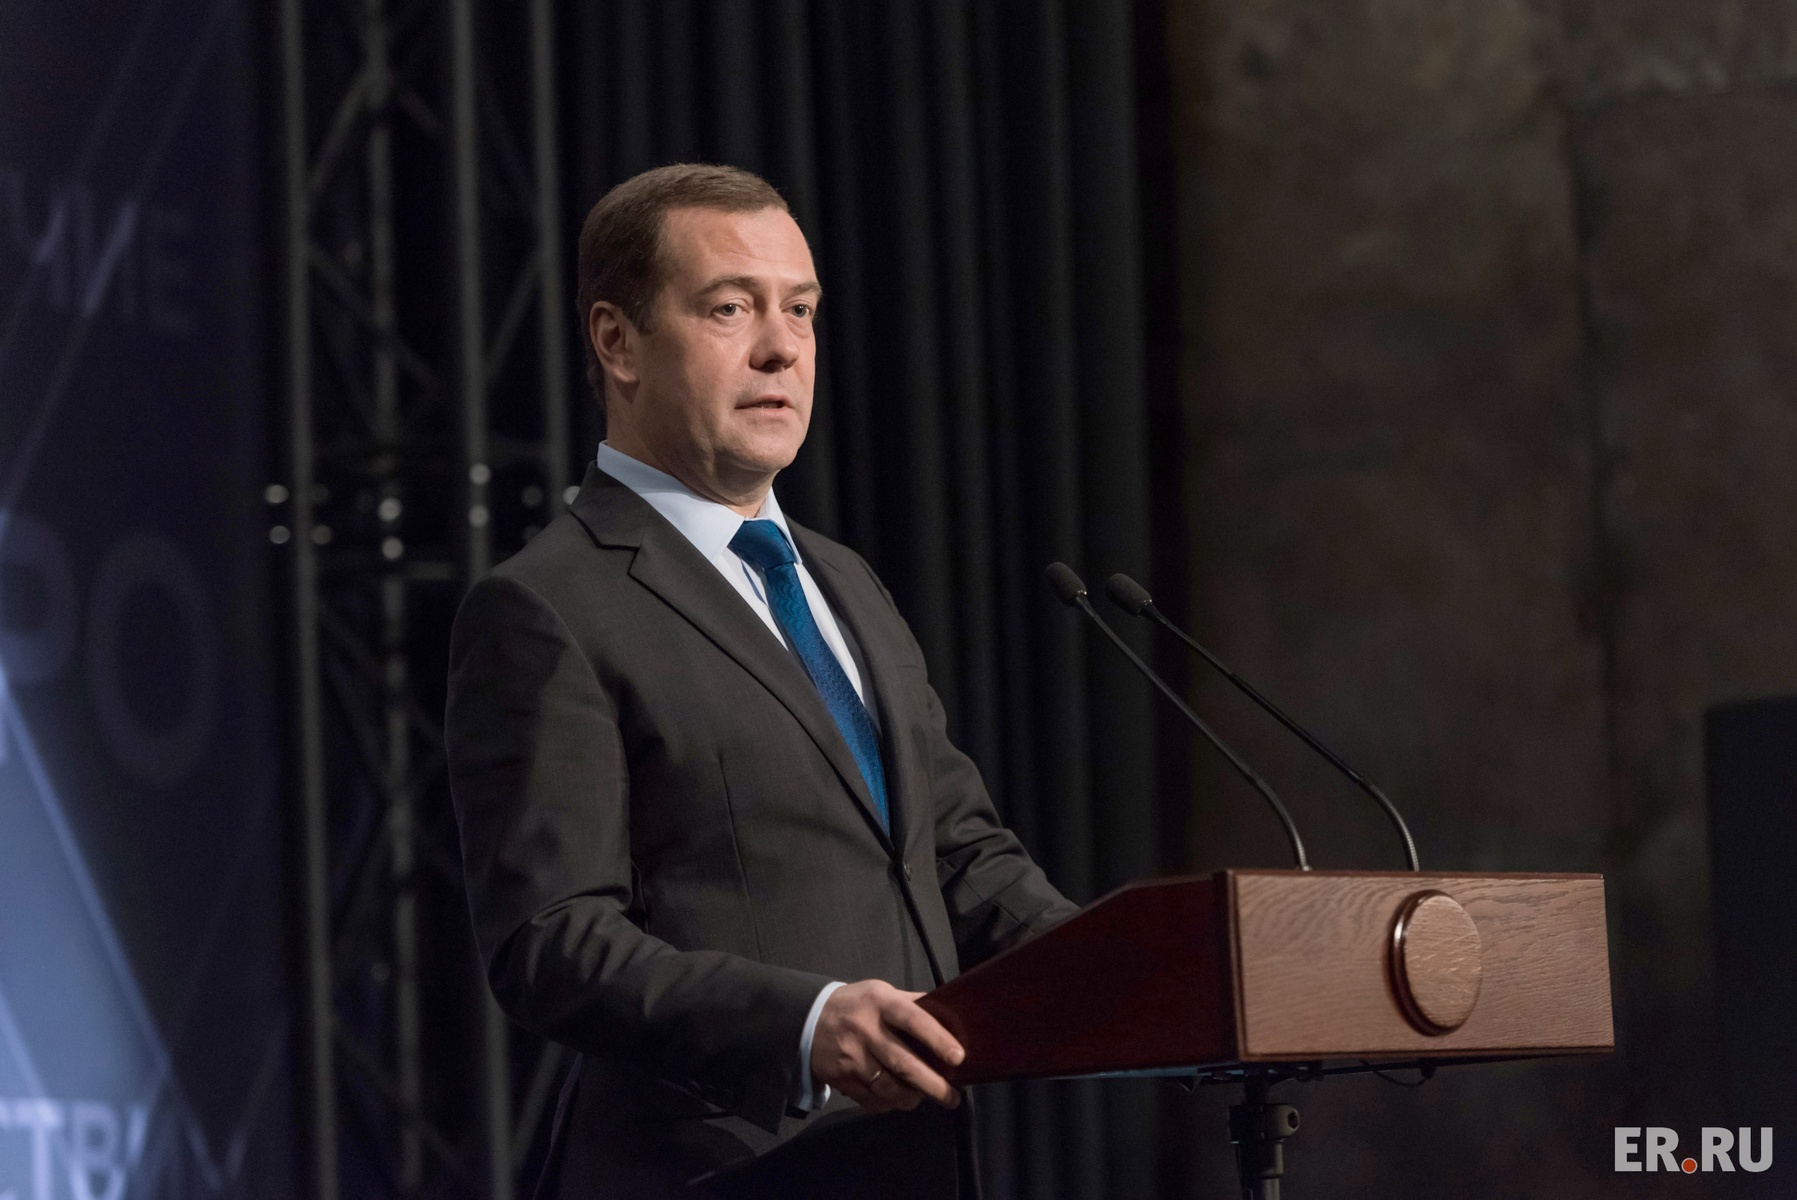  Дмитрий Медведев встретился с активистами «Молодой Гвардии Единой России»